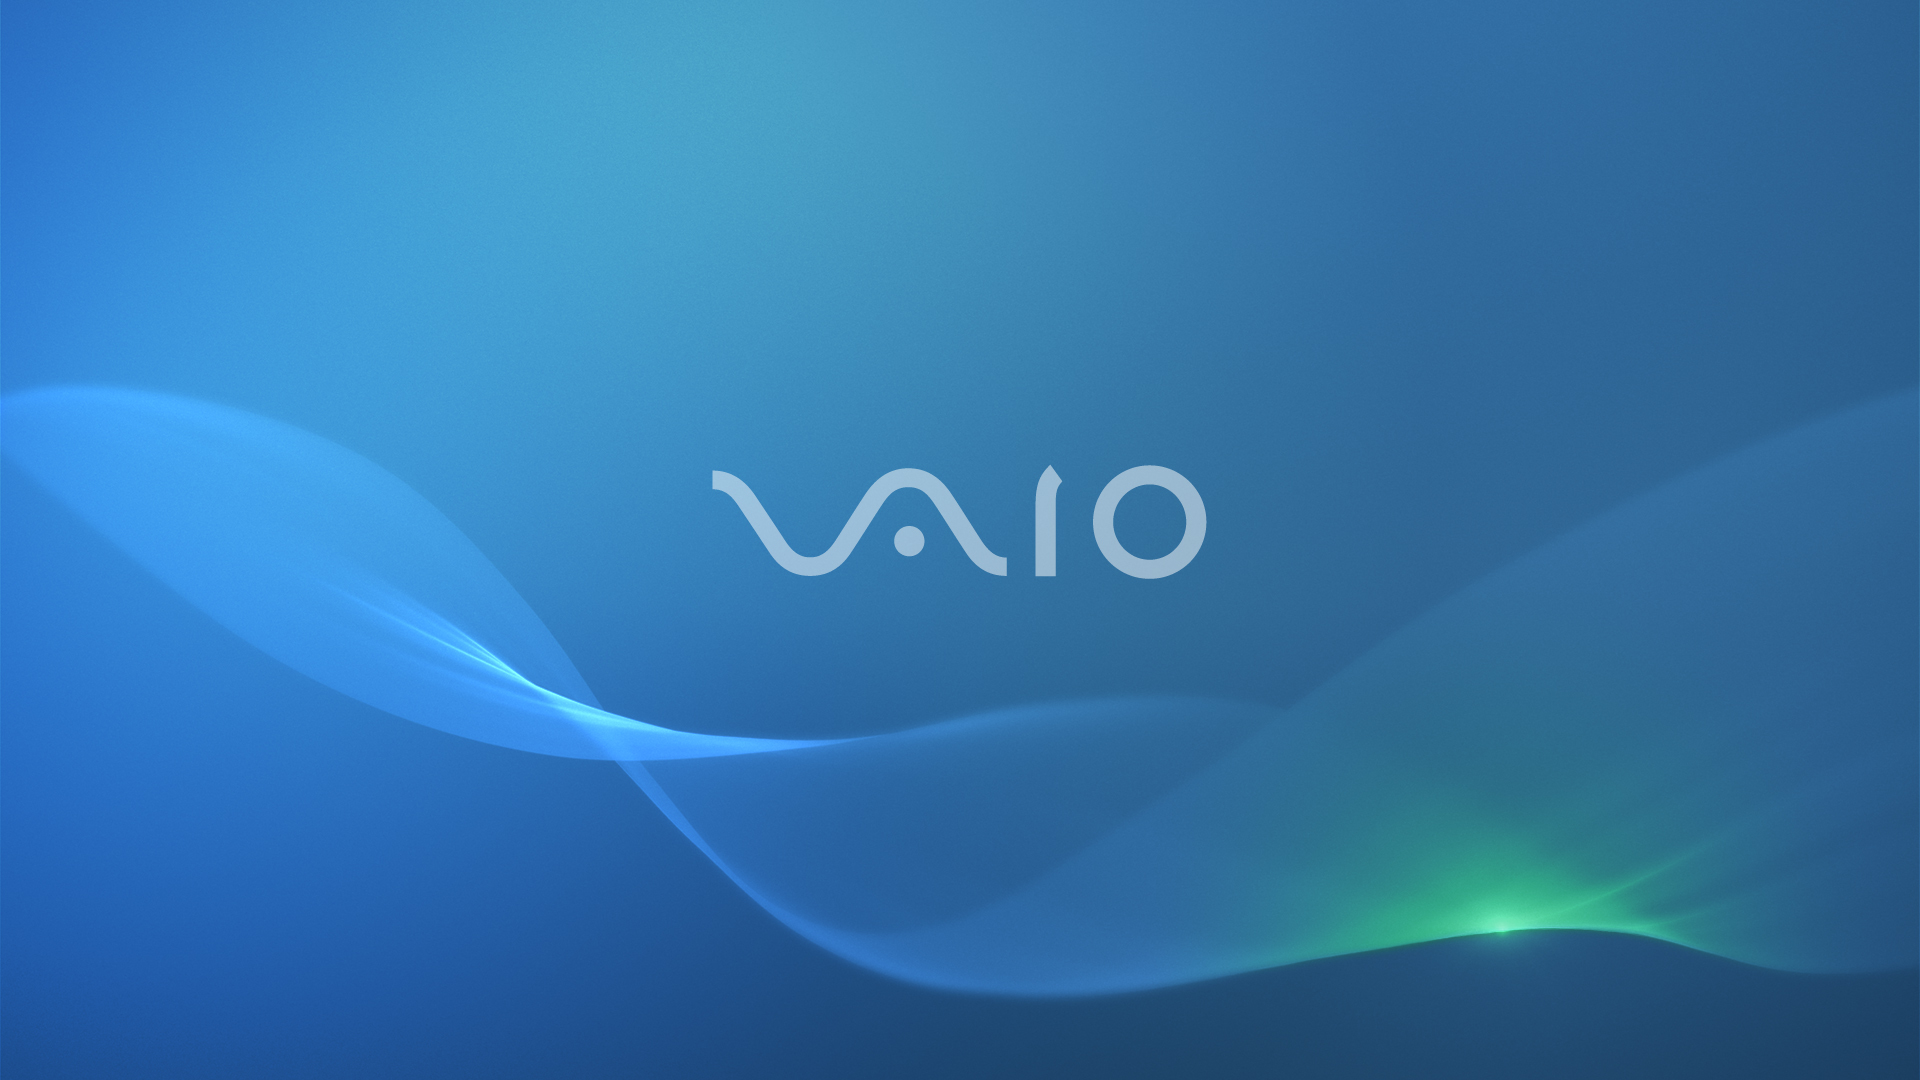 Обои sony xperia. Sony VAIO 2014. Сони Вайо логотип. Sony VAIO desktop.